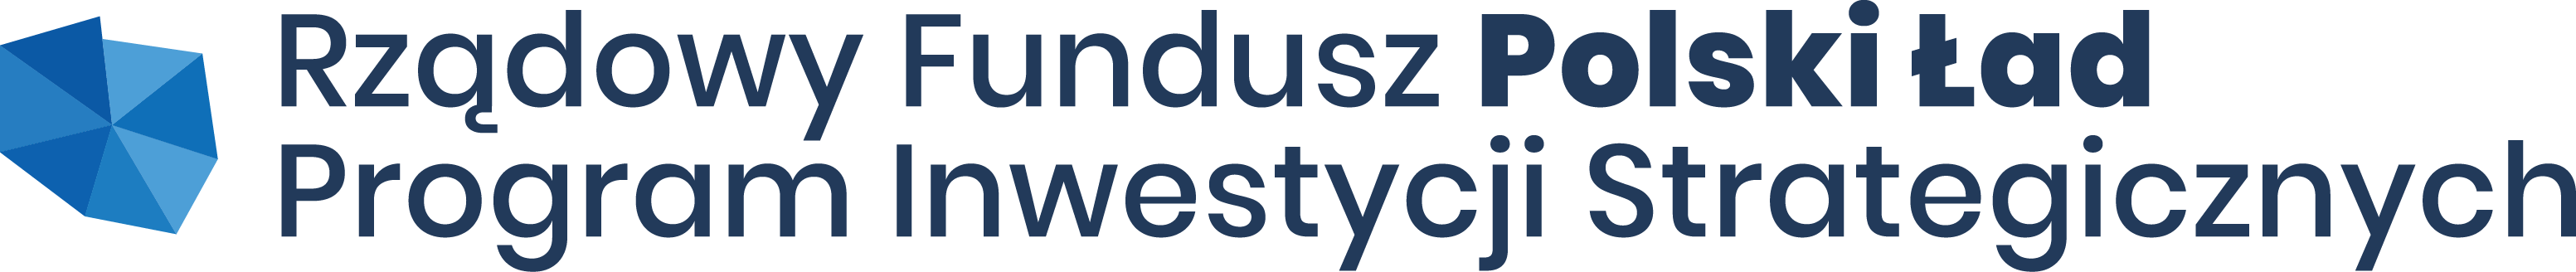 Logo Rządowego Funduszu Polski Ład: